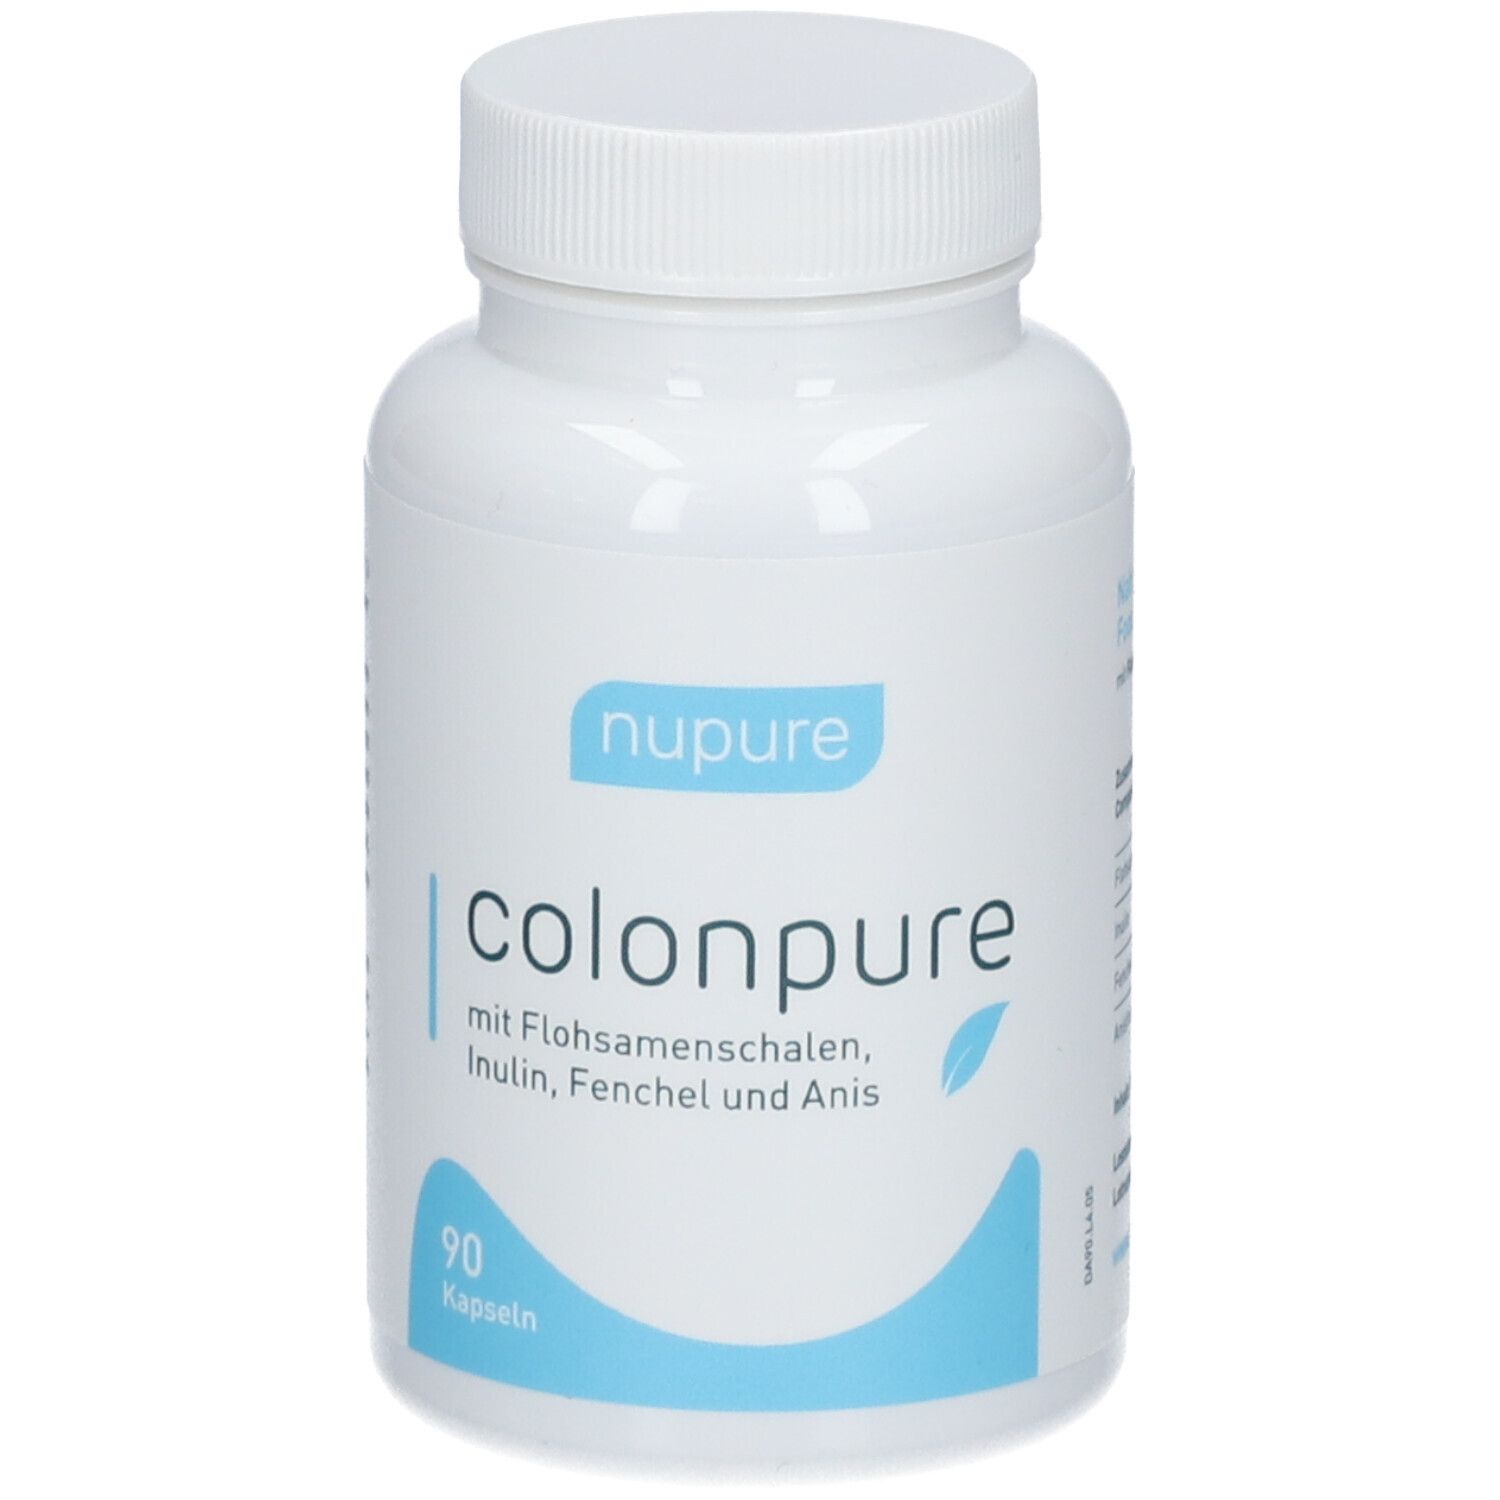 Nupure colon pure - Darmsanierung mit Detox-Kapseln mit natürlichen Zutaten